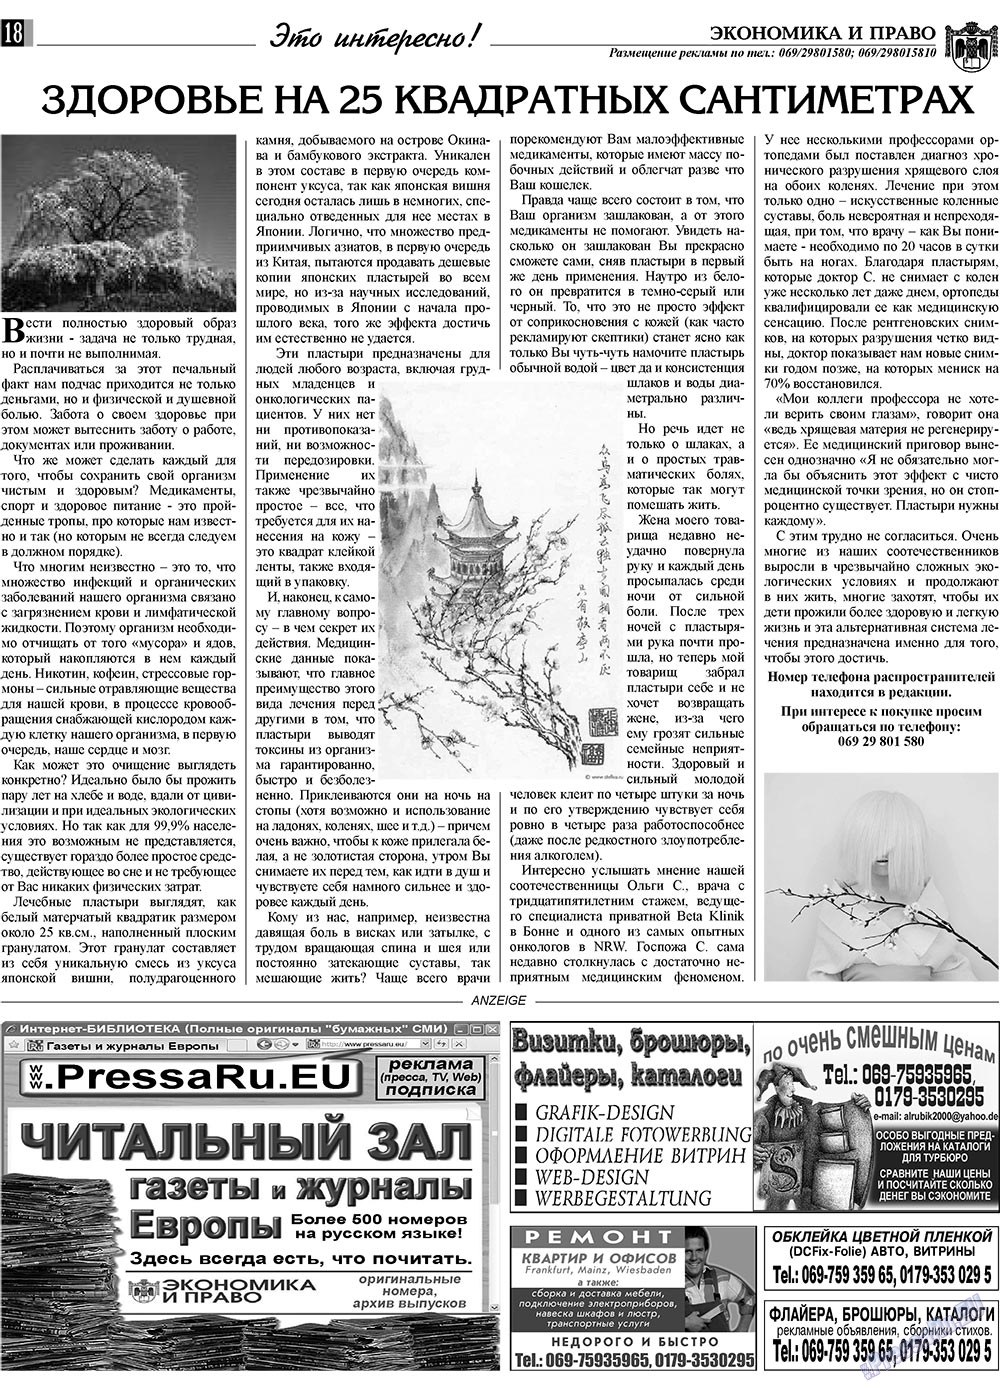 Экономика и право, газета. 2009 №12 стр.18